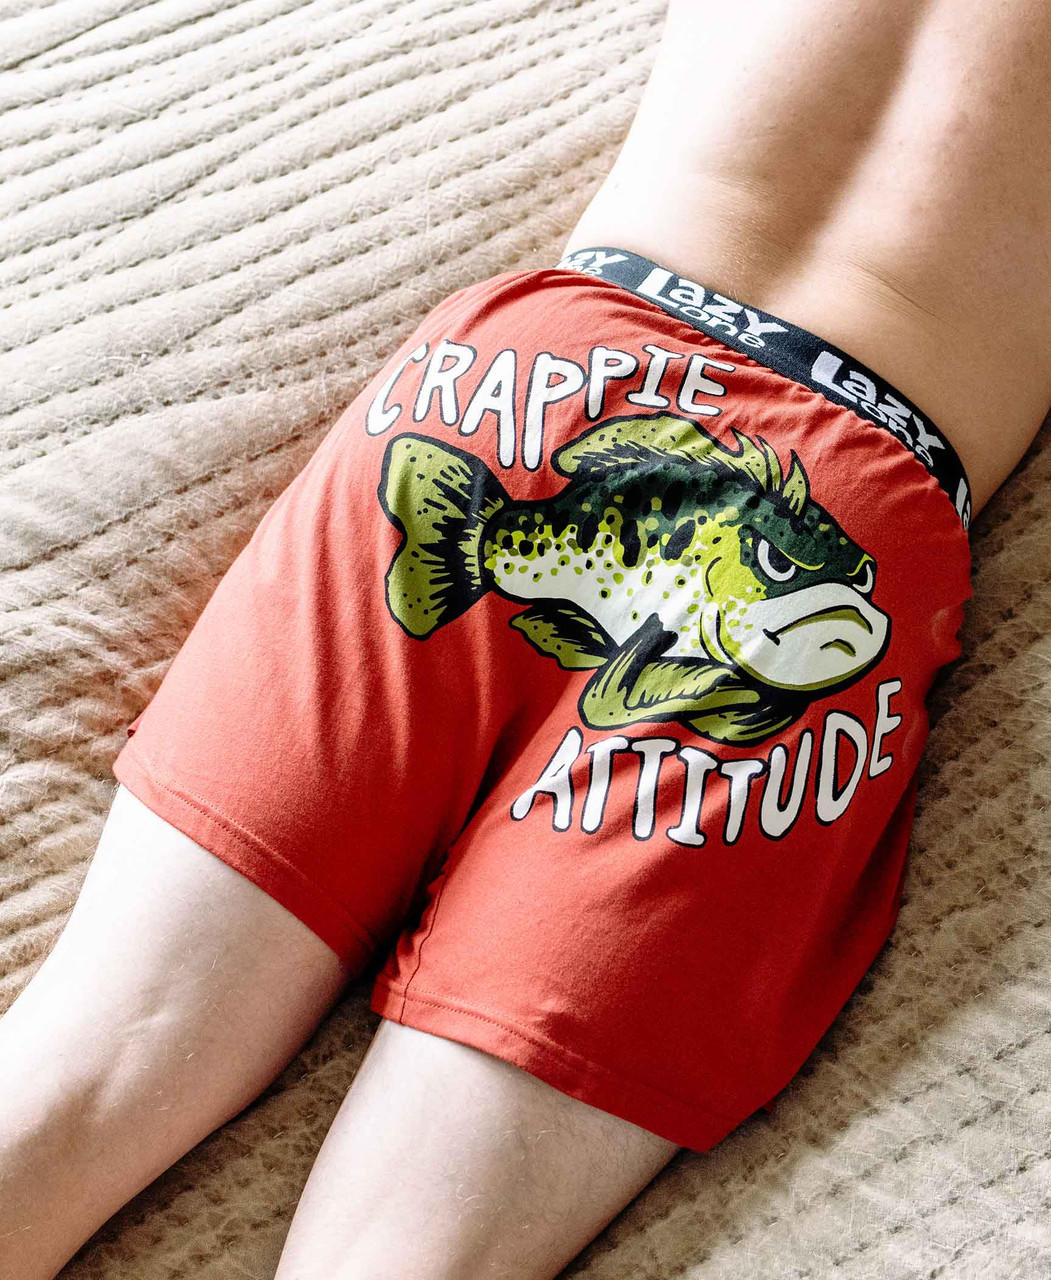 Crappie Attitude Men's Funny Fish Boxer